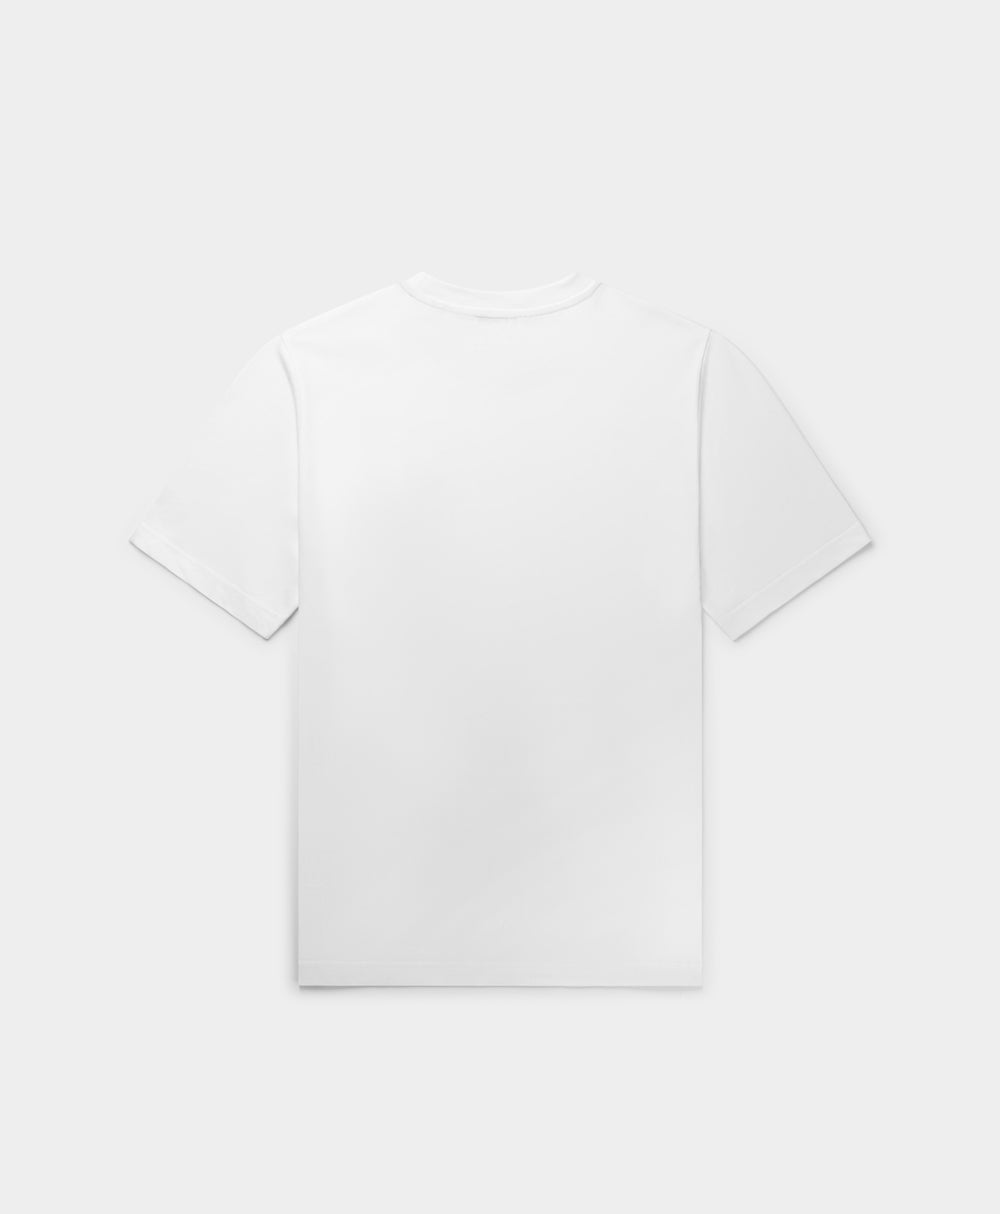 DP - White Glow T-Shirt - Packshot - Rear